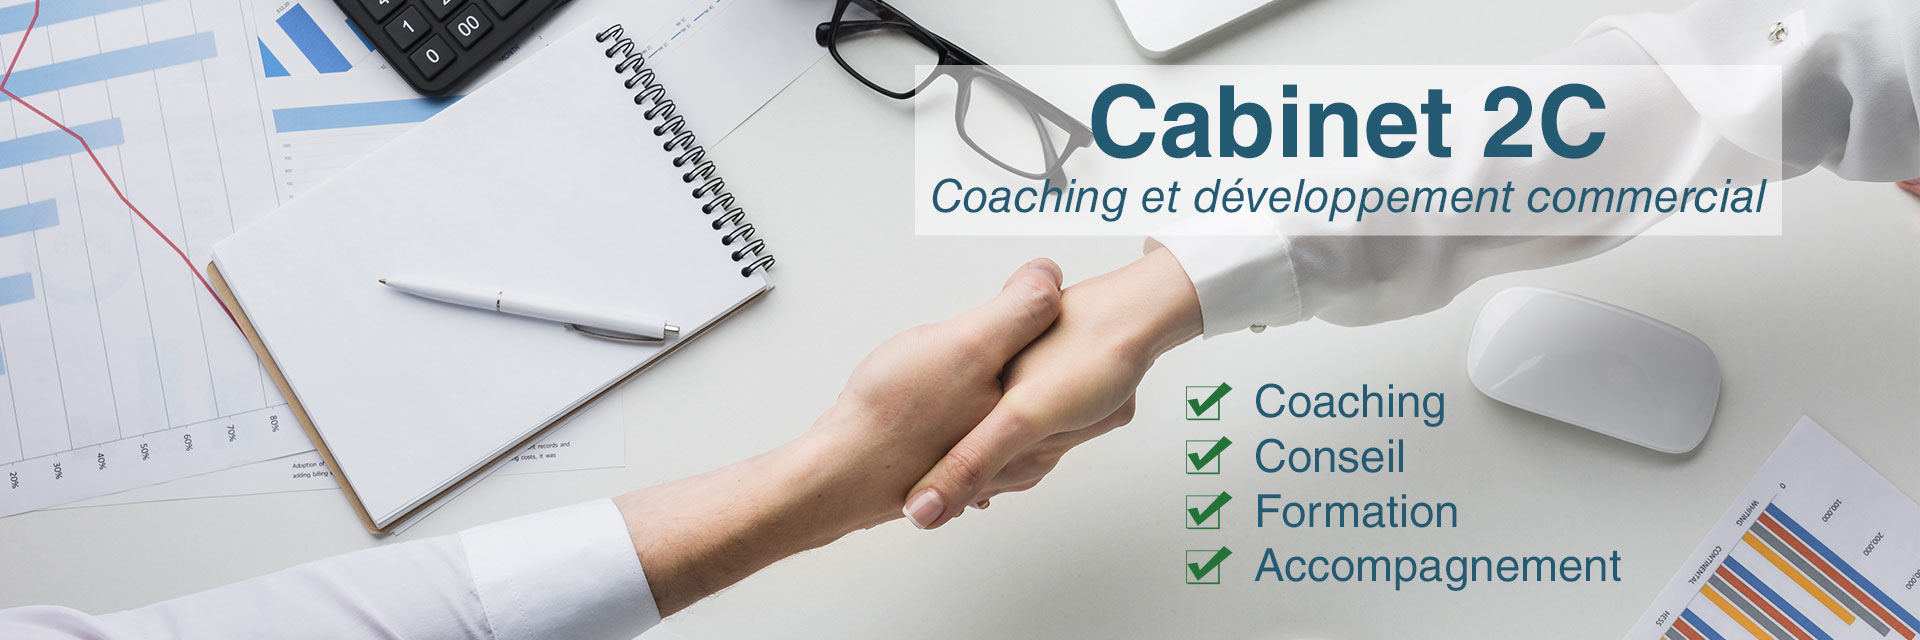 Cabinet 2C - Coaching et développement commercial